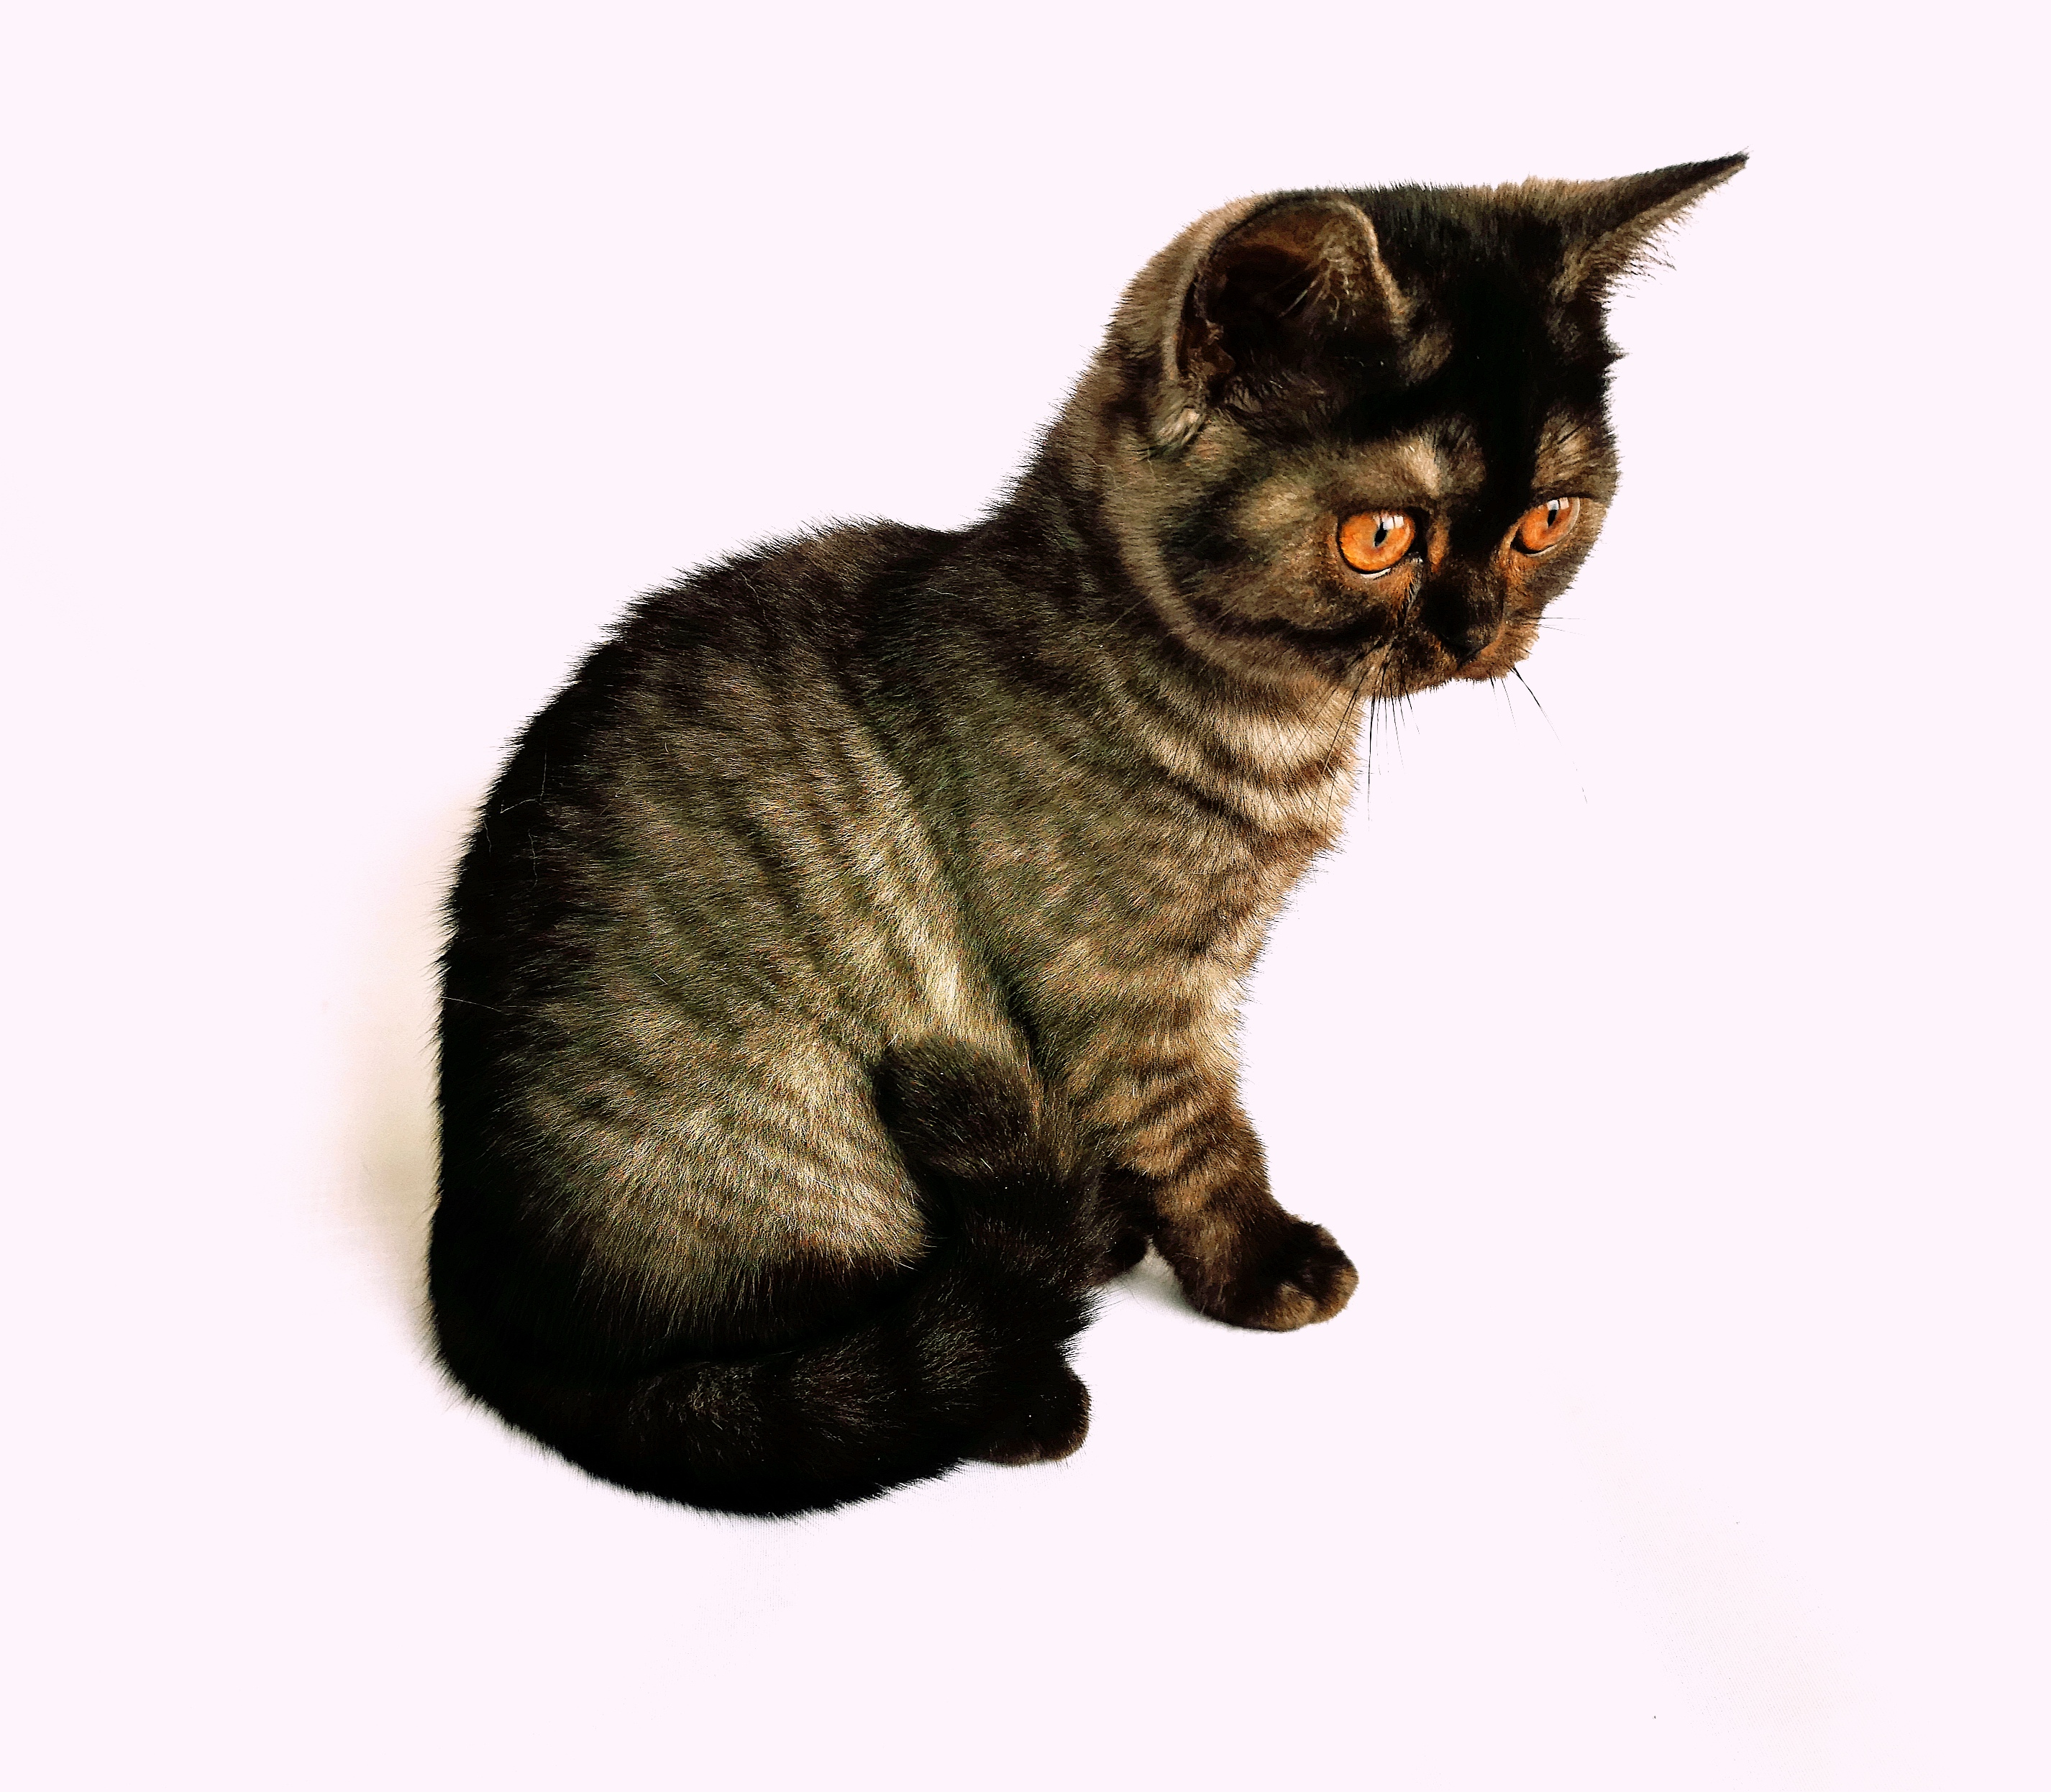 Питомник британских и шотландских кошек. Купить британского и шотландского котёнка в Гомеле, в Минске